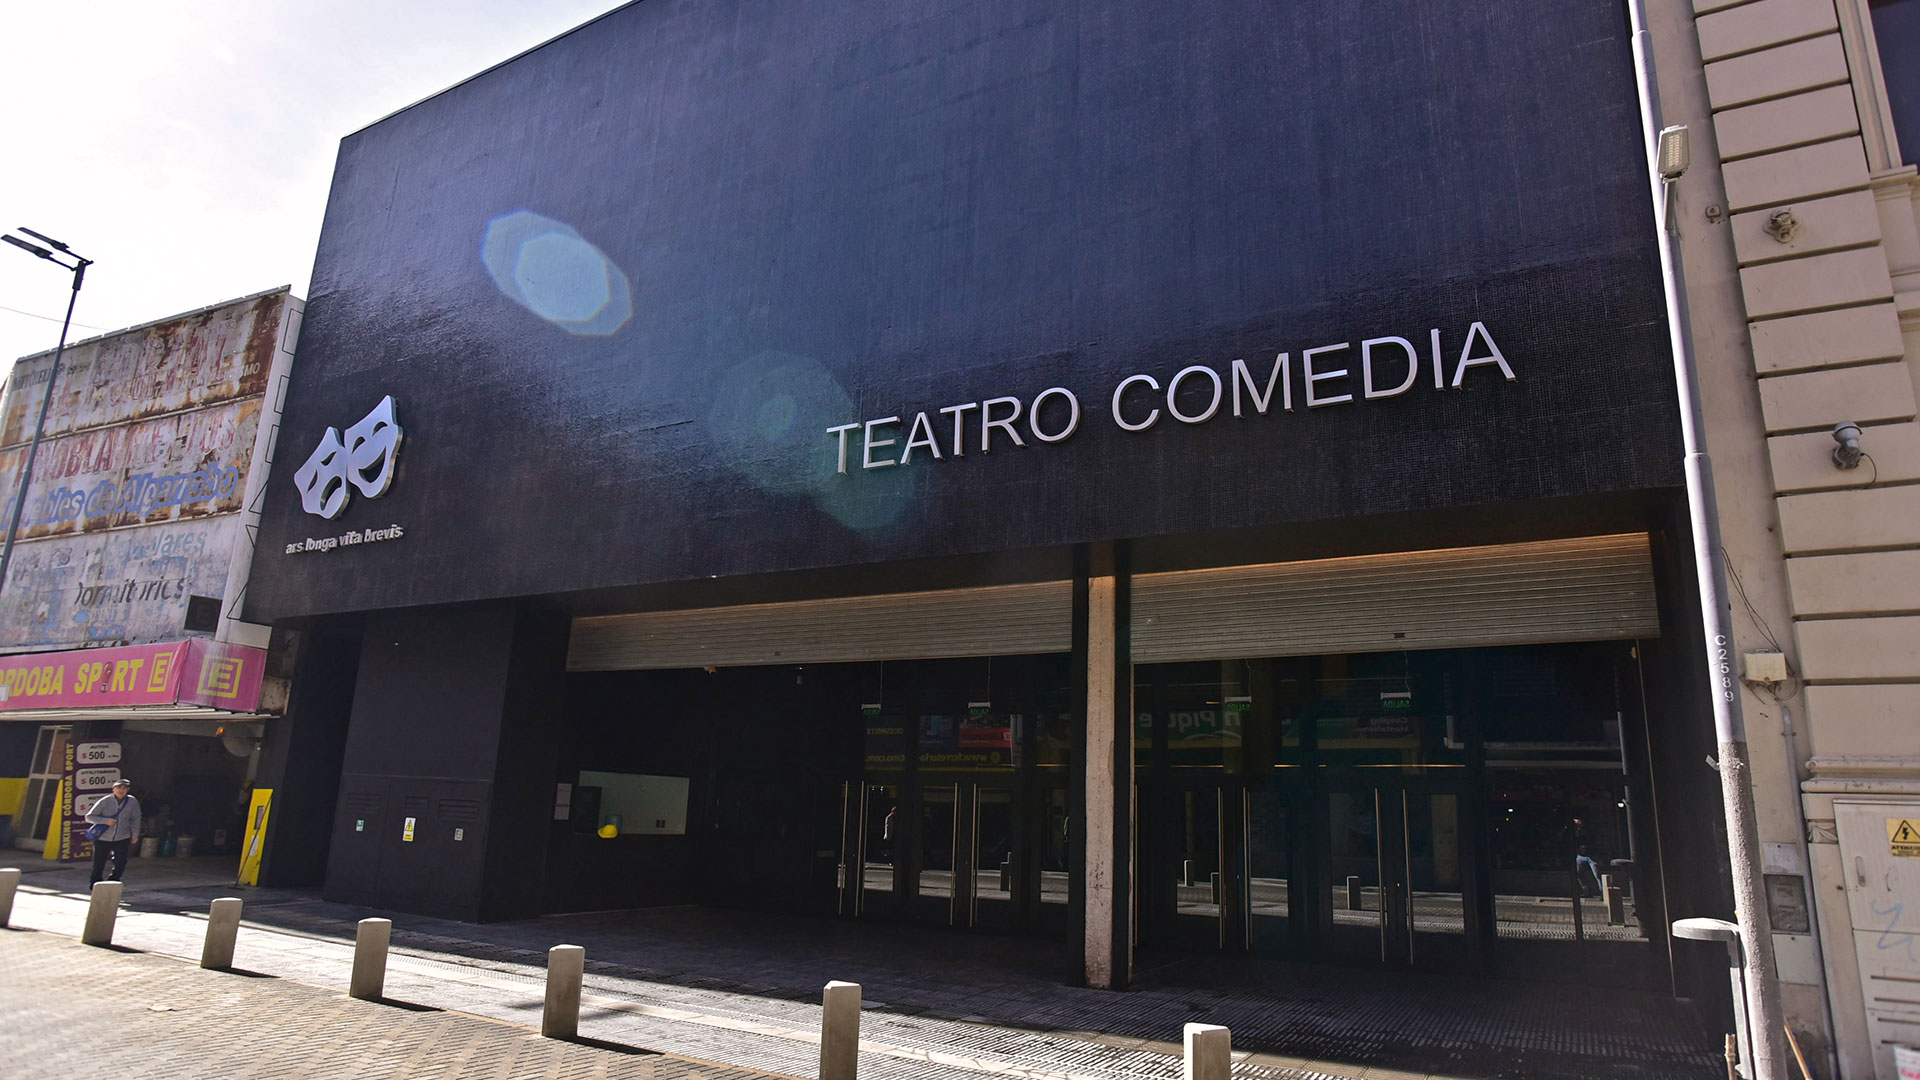 Teatro municipal Comedia